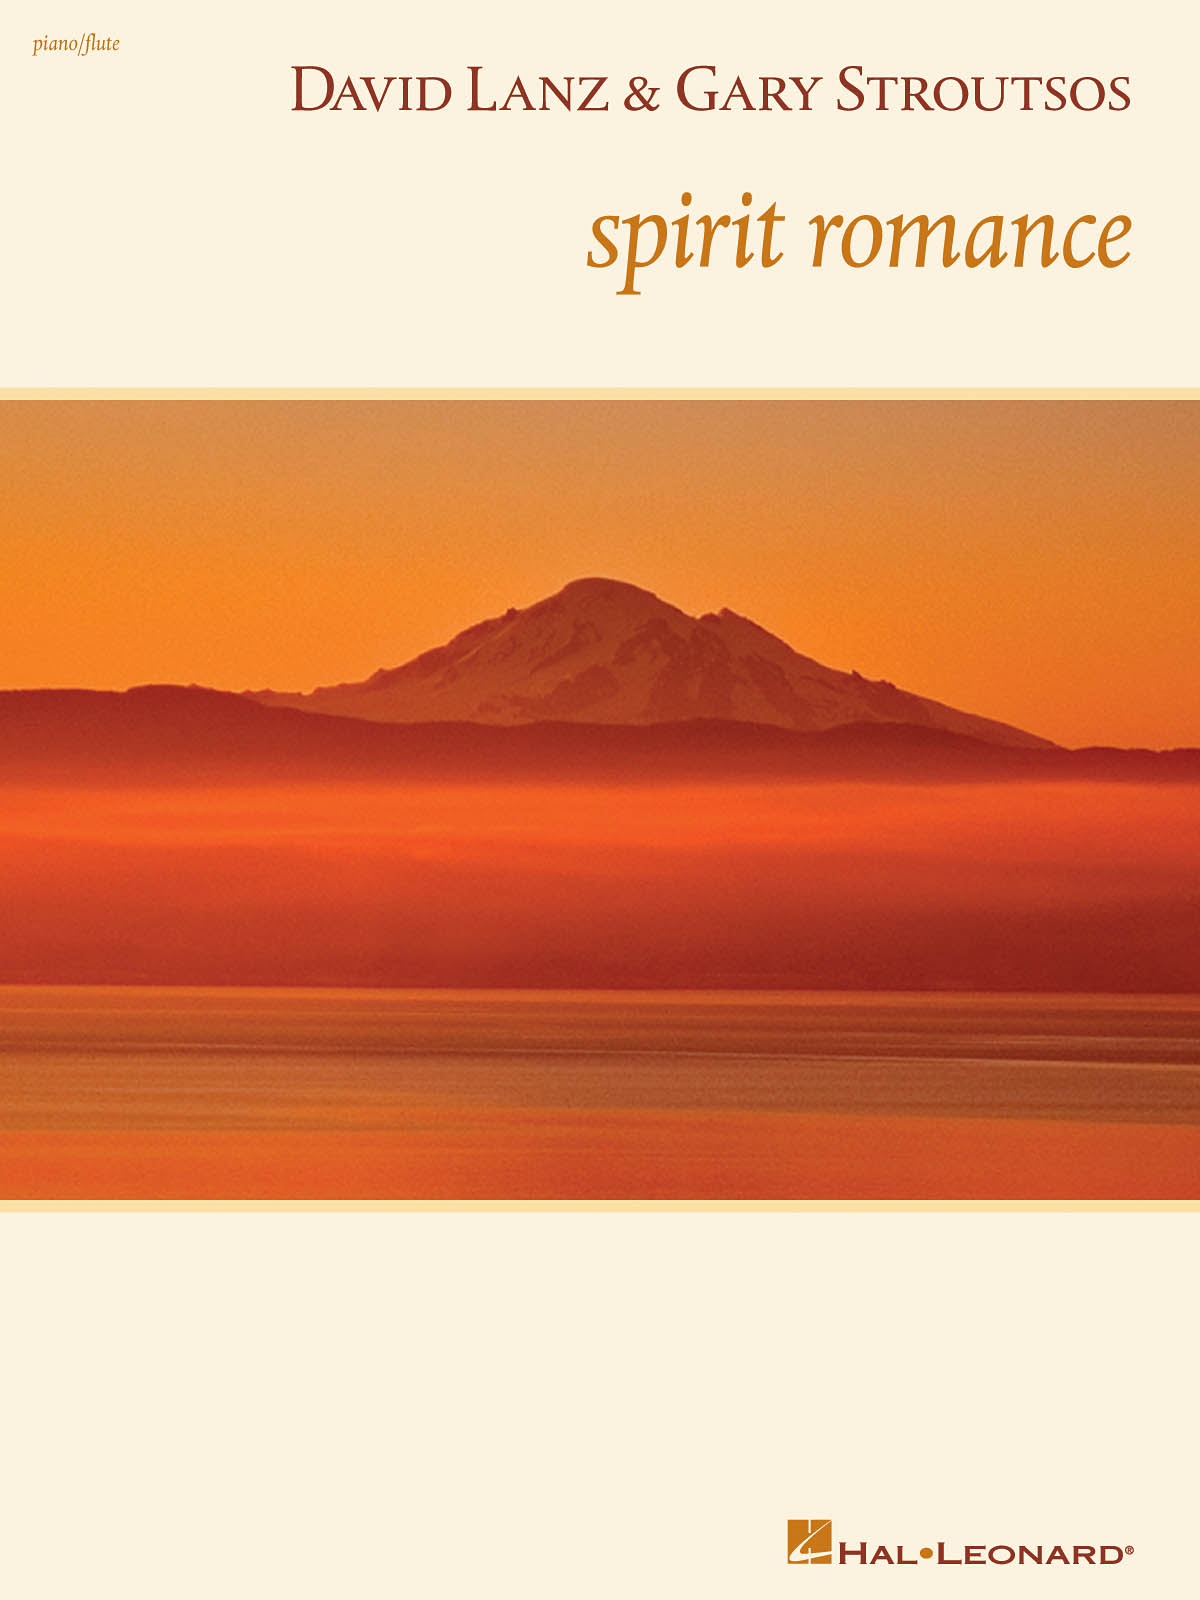 David Lanz & Gary Stroutsos - Spirit Romance